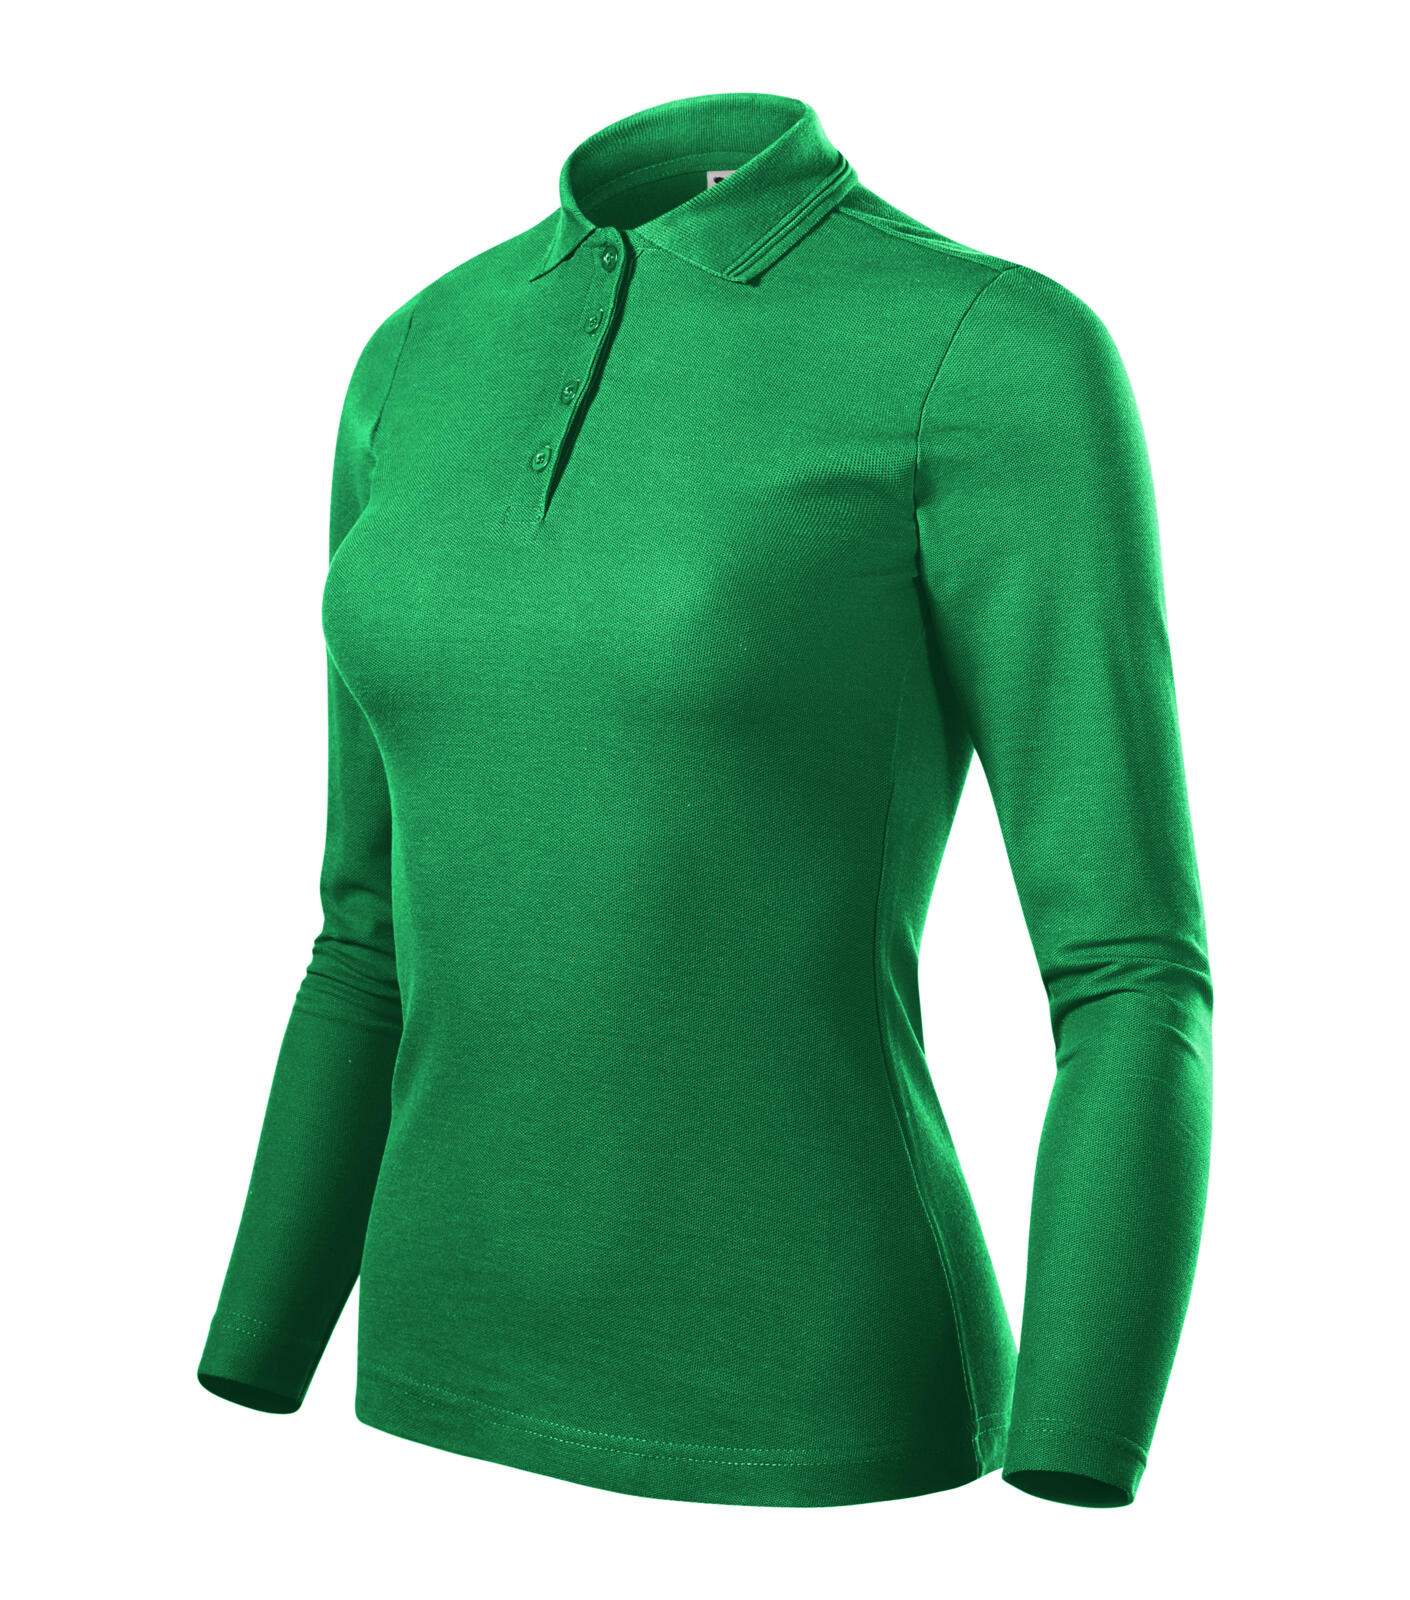 Pique Polo LS Polokošile dámská Barva: středně zelená, Velikost: XS